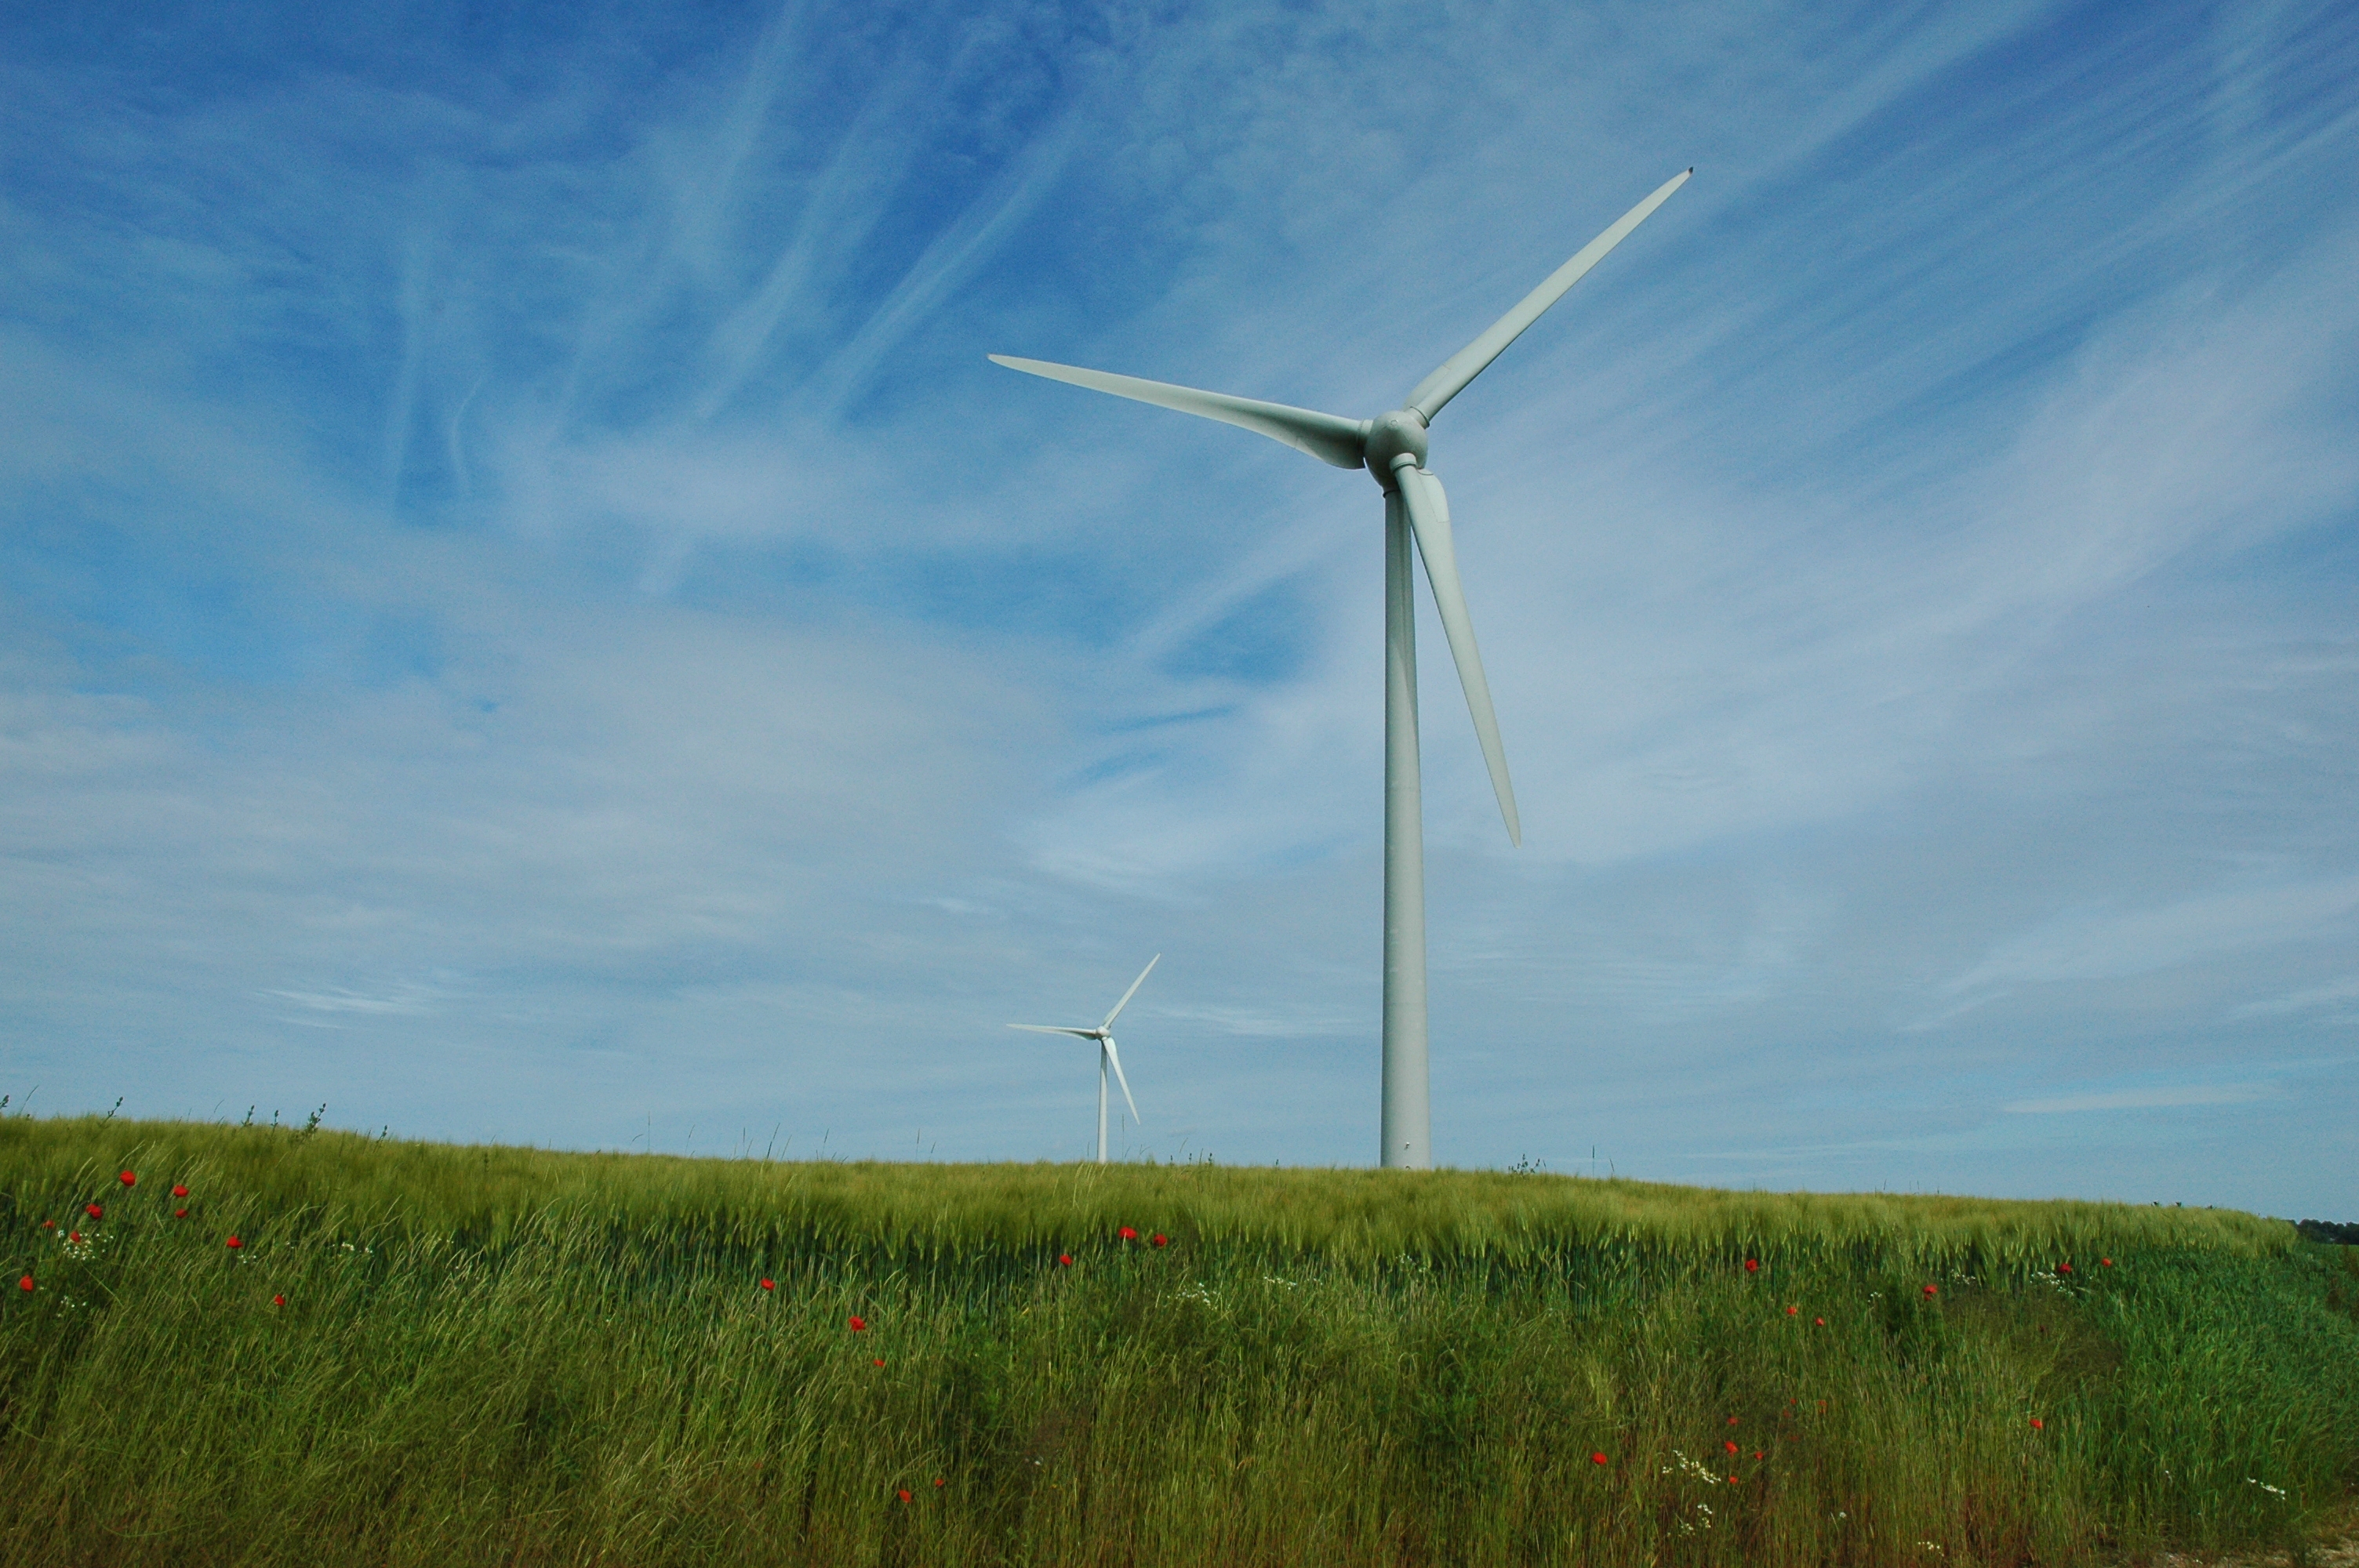 En image, une éolienne. D'ici 2020, l'énergie éolienne devrait produire jusqu'à 10 % de l'énergie électrique, en France.&nbsp;© isamiga76, Flickr, cc by&nbsp;2.0